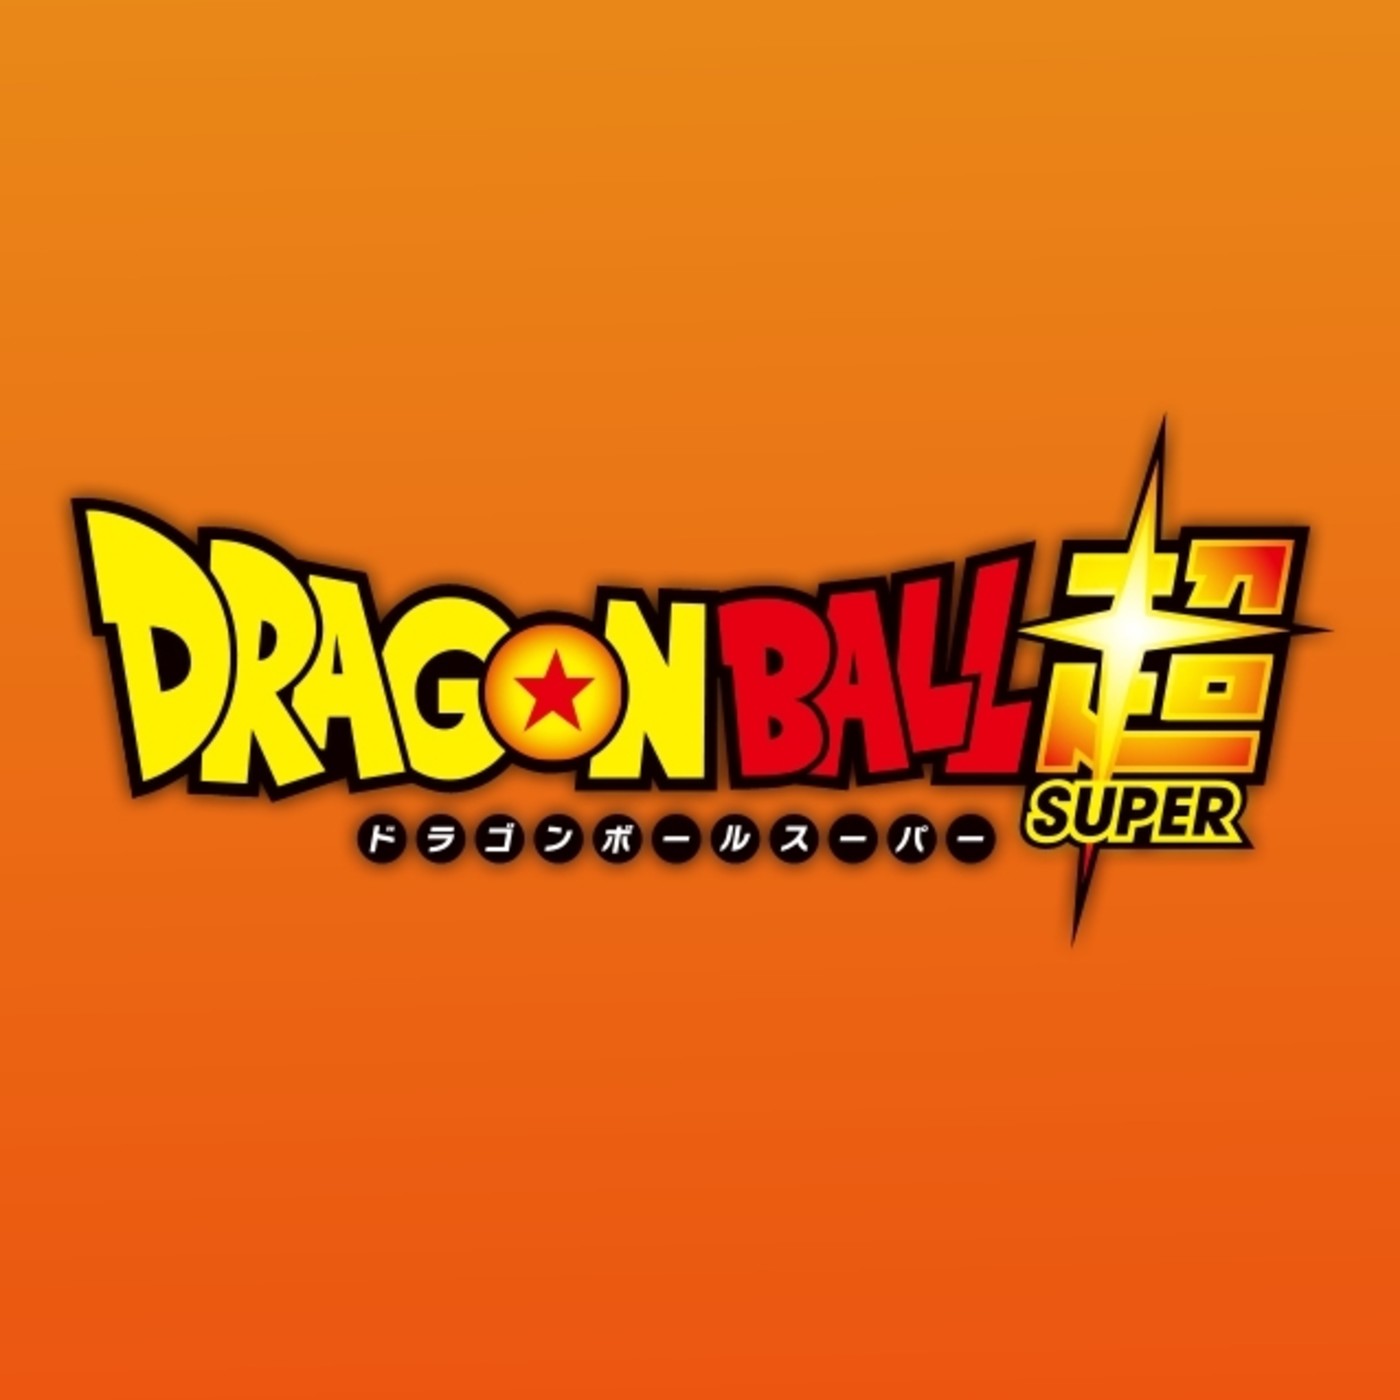 Gambatte Podcast | ’Dragon Ball Super’: Resumen 1-27, Boing, la censura y nuevos capítulos